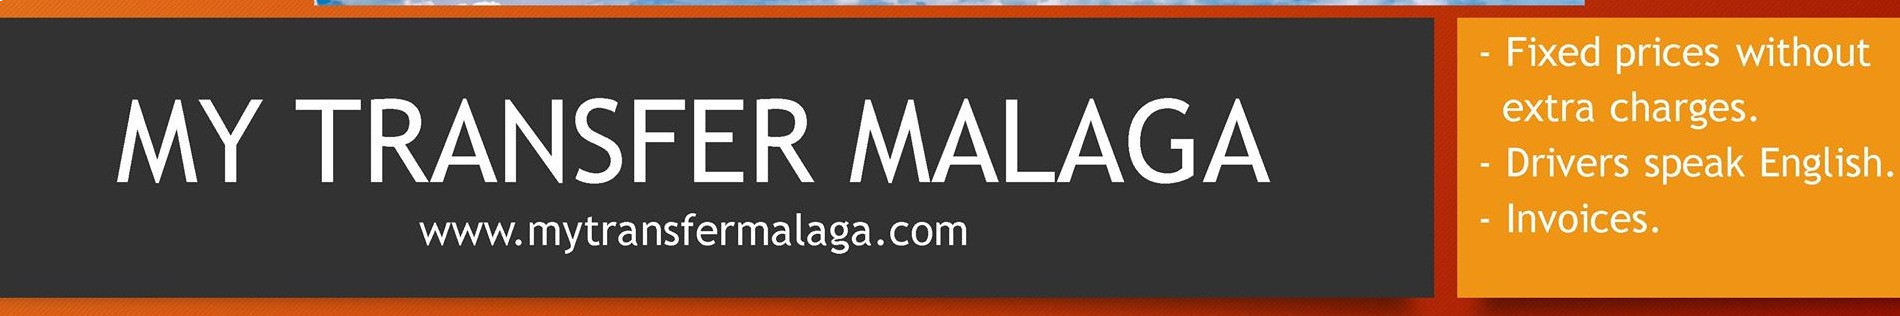 My Transfer Malaga 